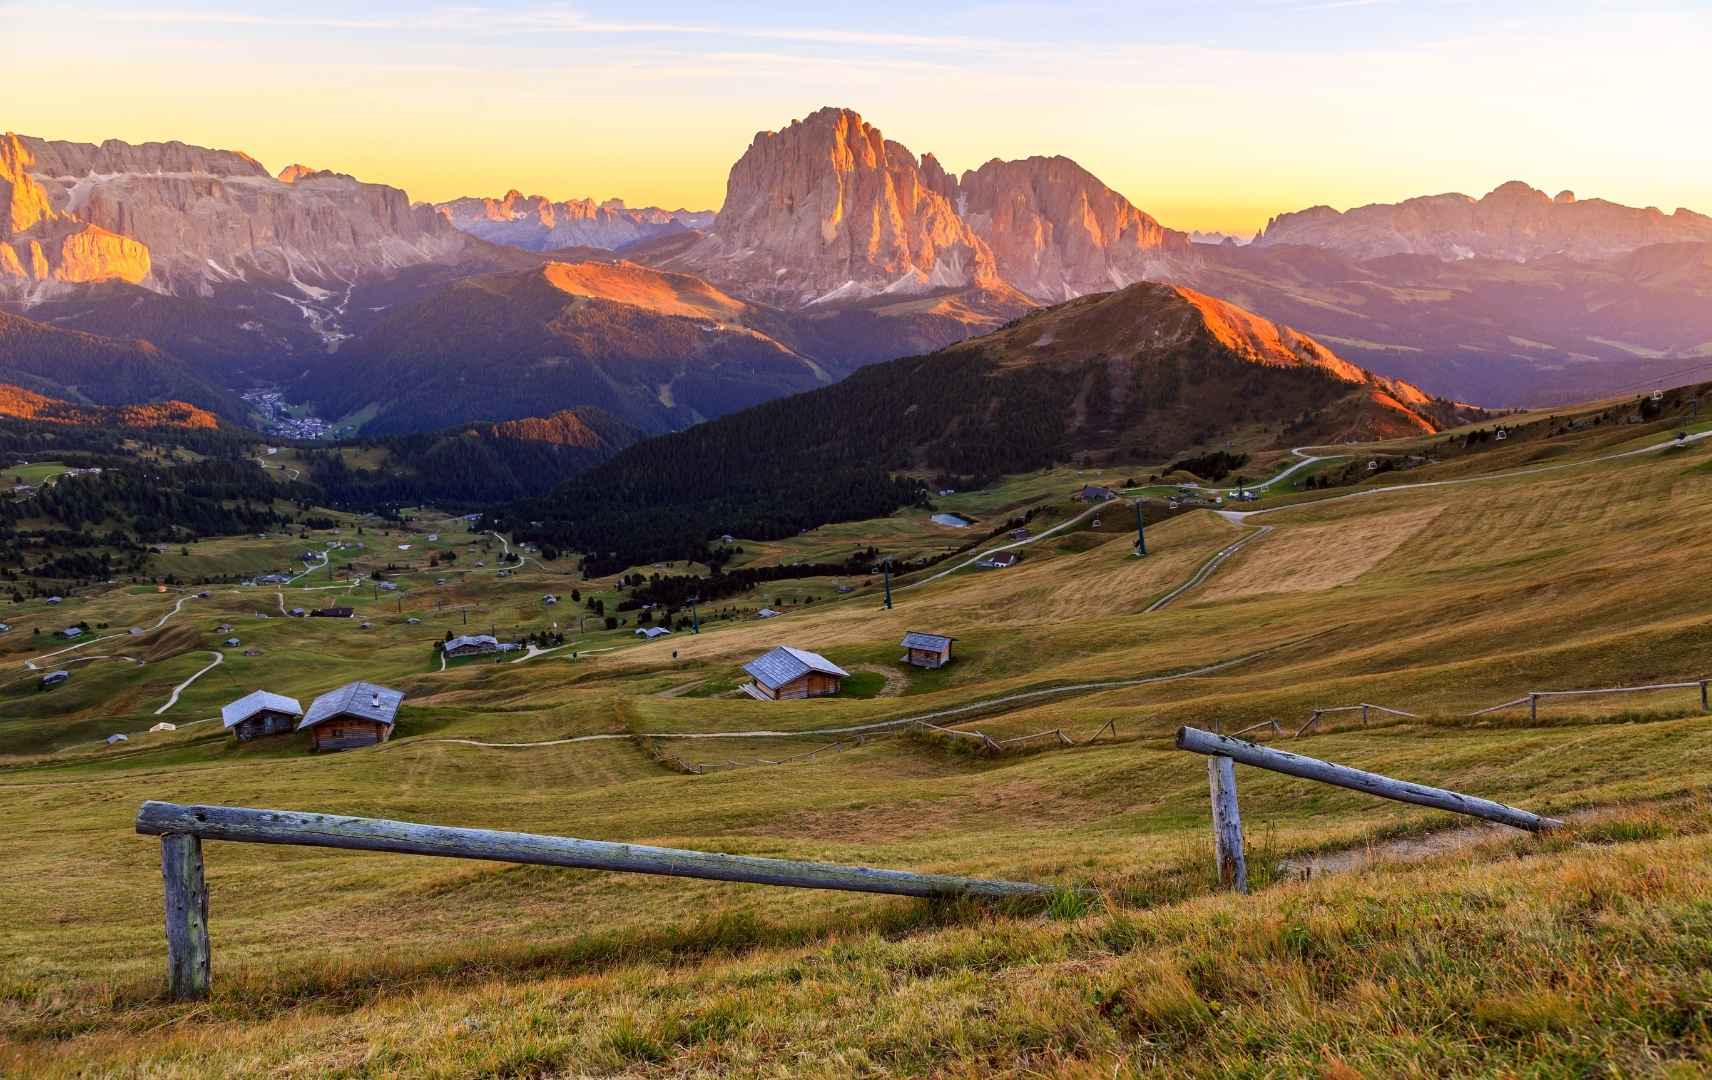 Berge in Südtirol